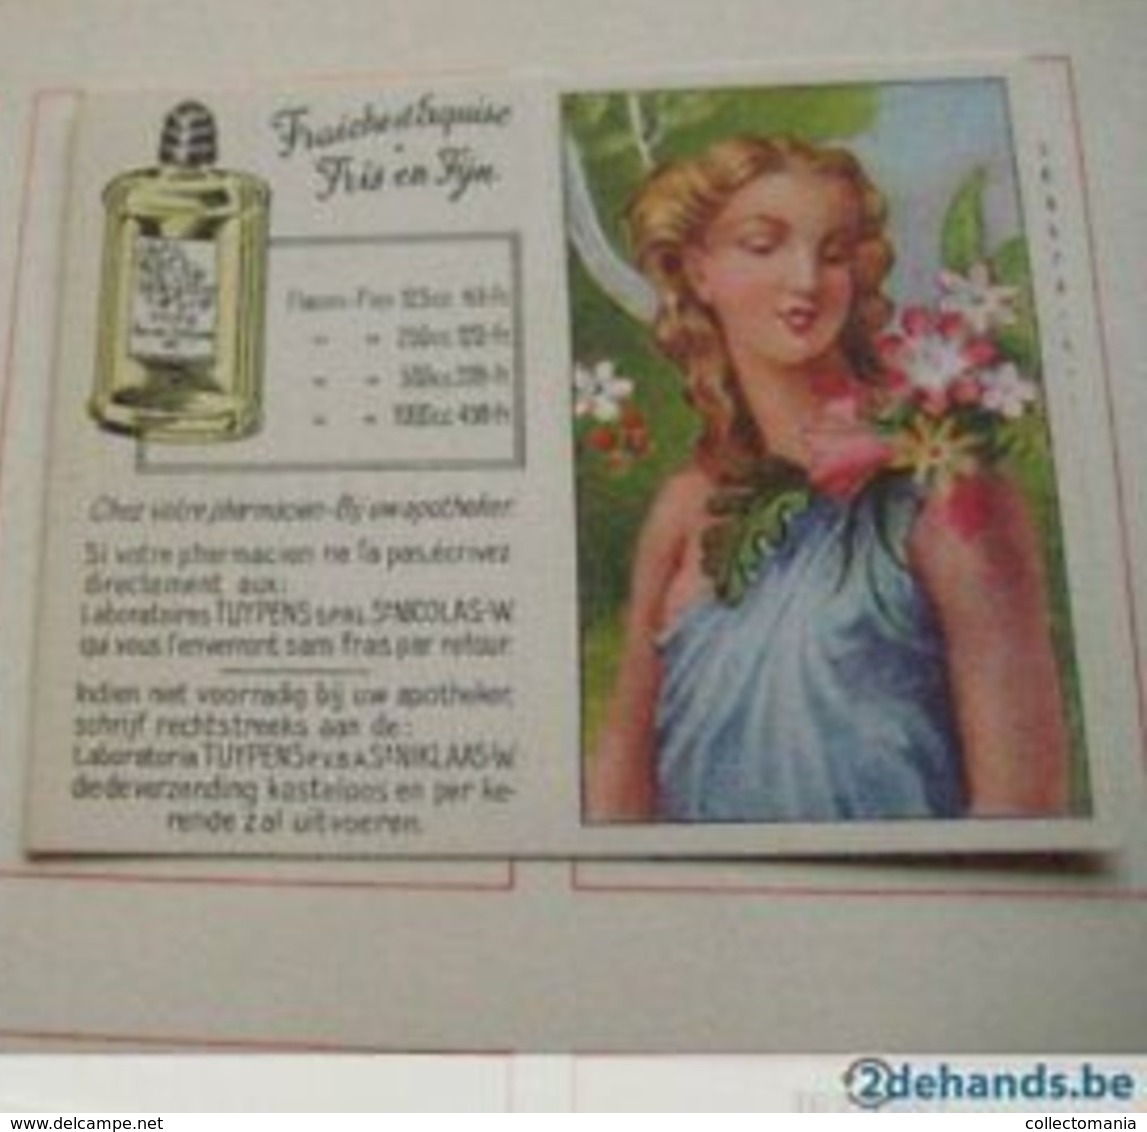 10 Cartes Differentes, + L'album Vide, Tous Comme Neuf , Femmes Célèbres De L'histoire Laboratoires TUYPENS Sint Niklaas - Vintage (until 1960)